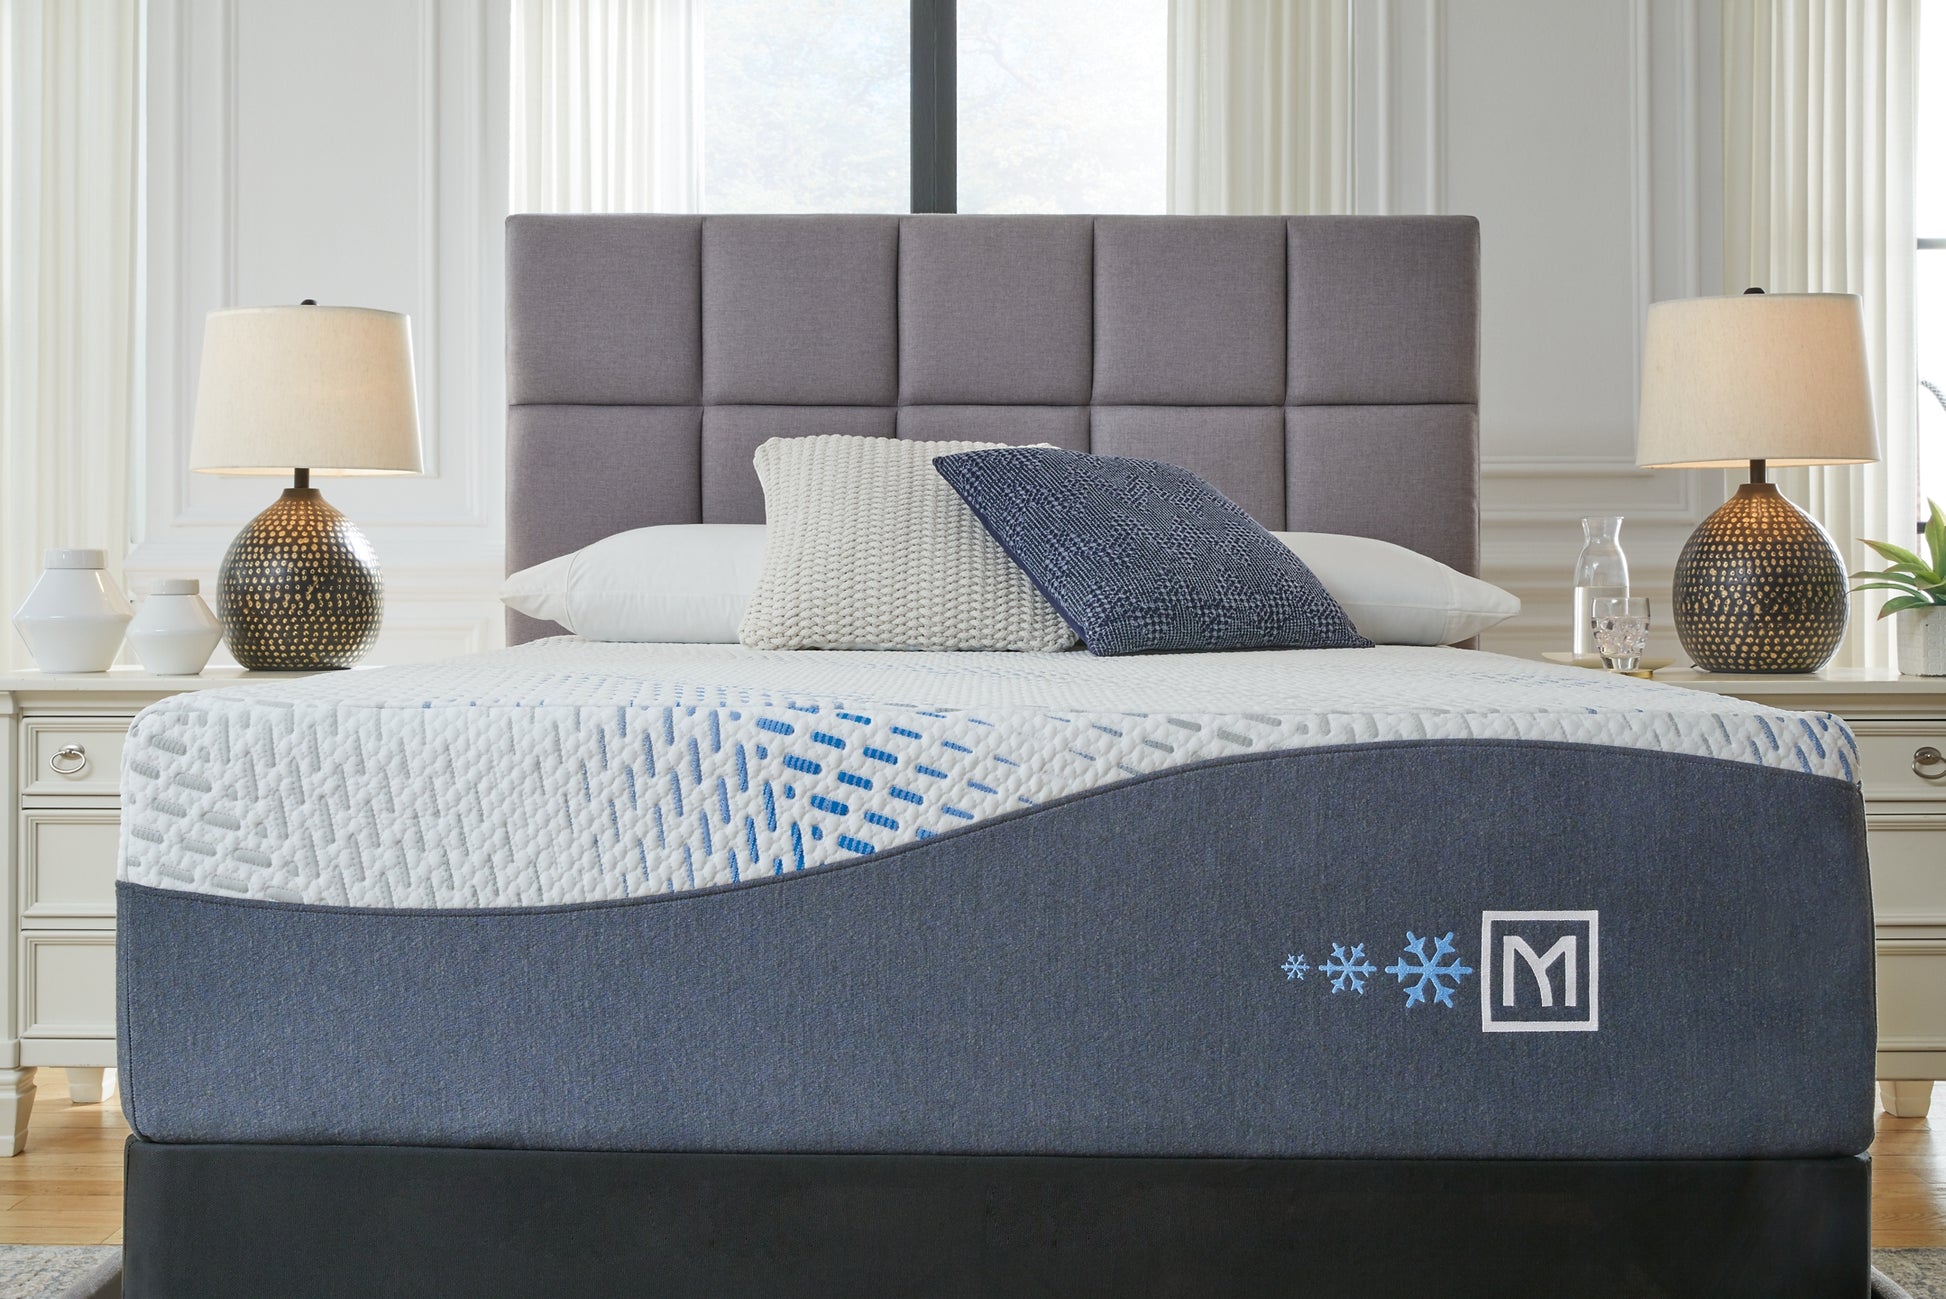 Millennium Cushion Firm Gel Memory Foam Hybrid Queen Mattress Sierra Sleep® by Ashley